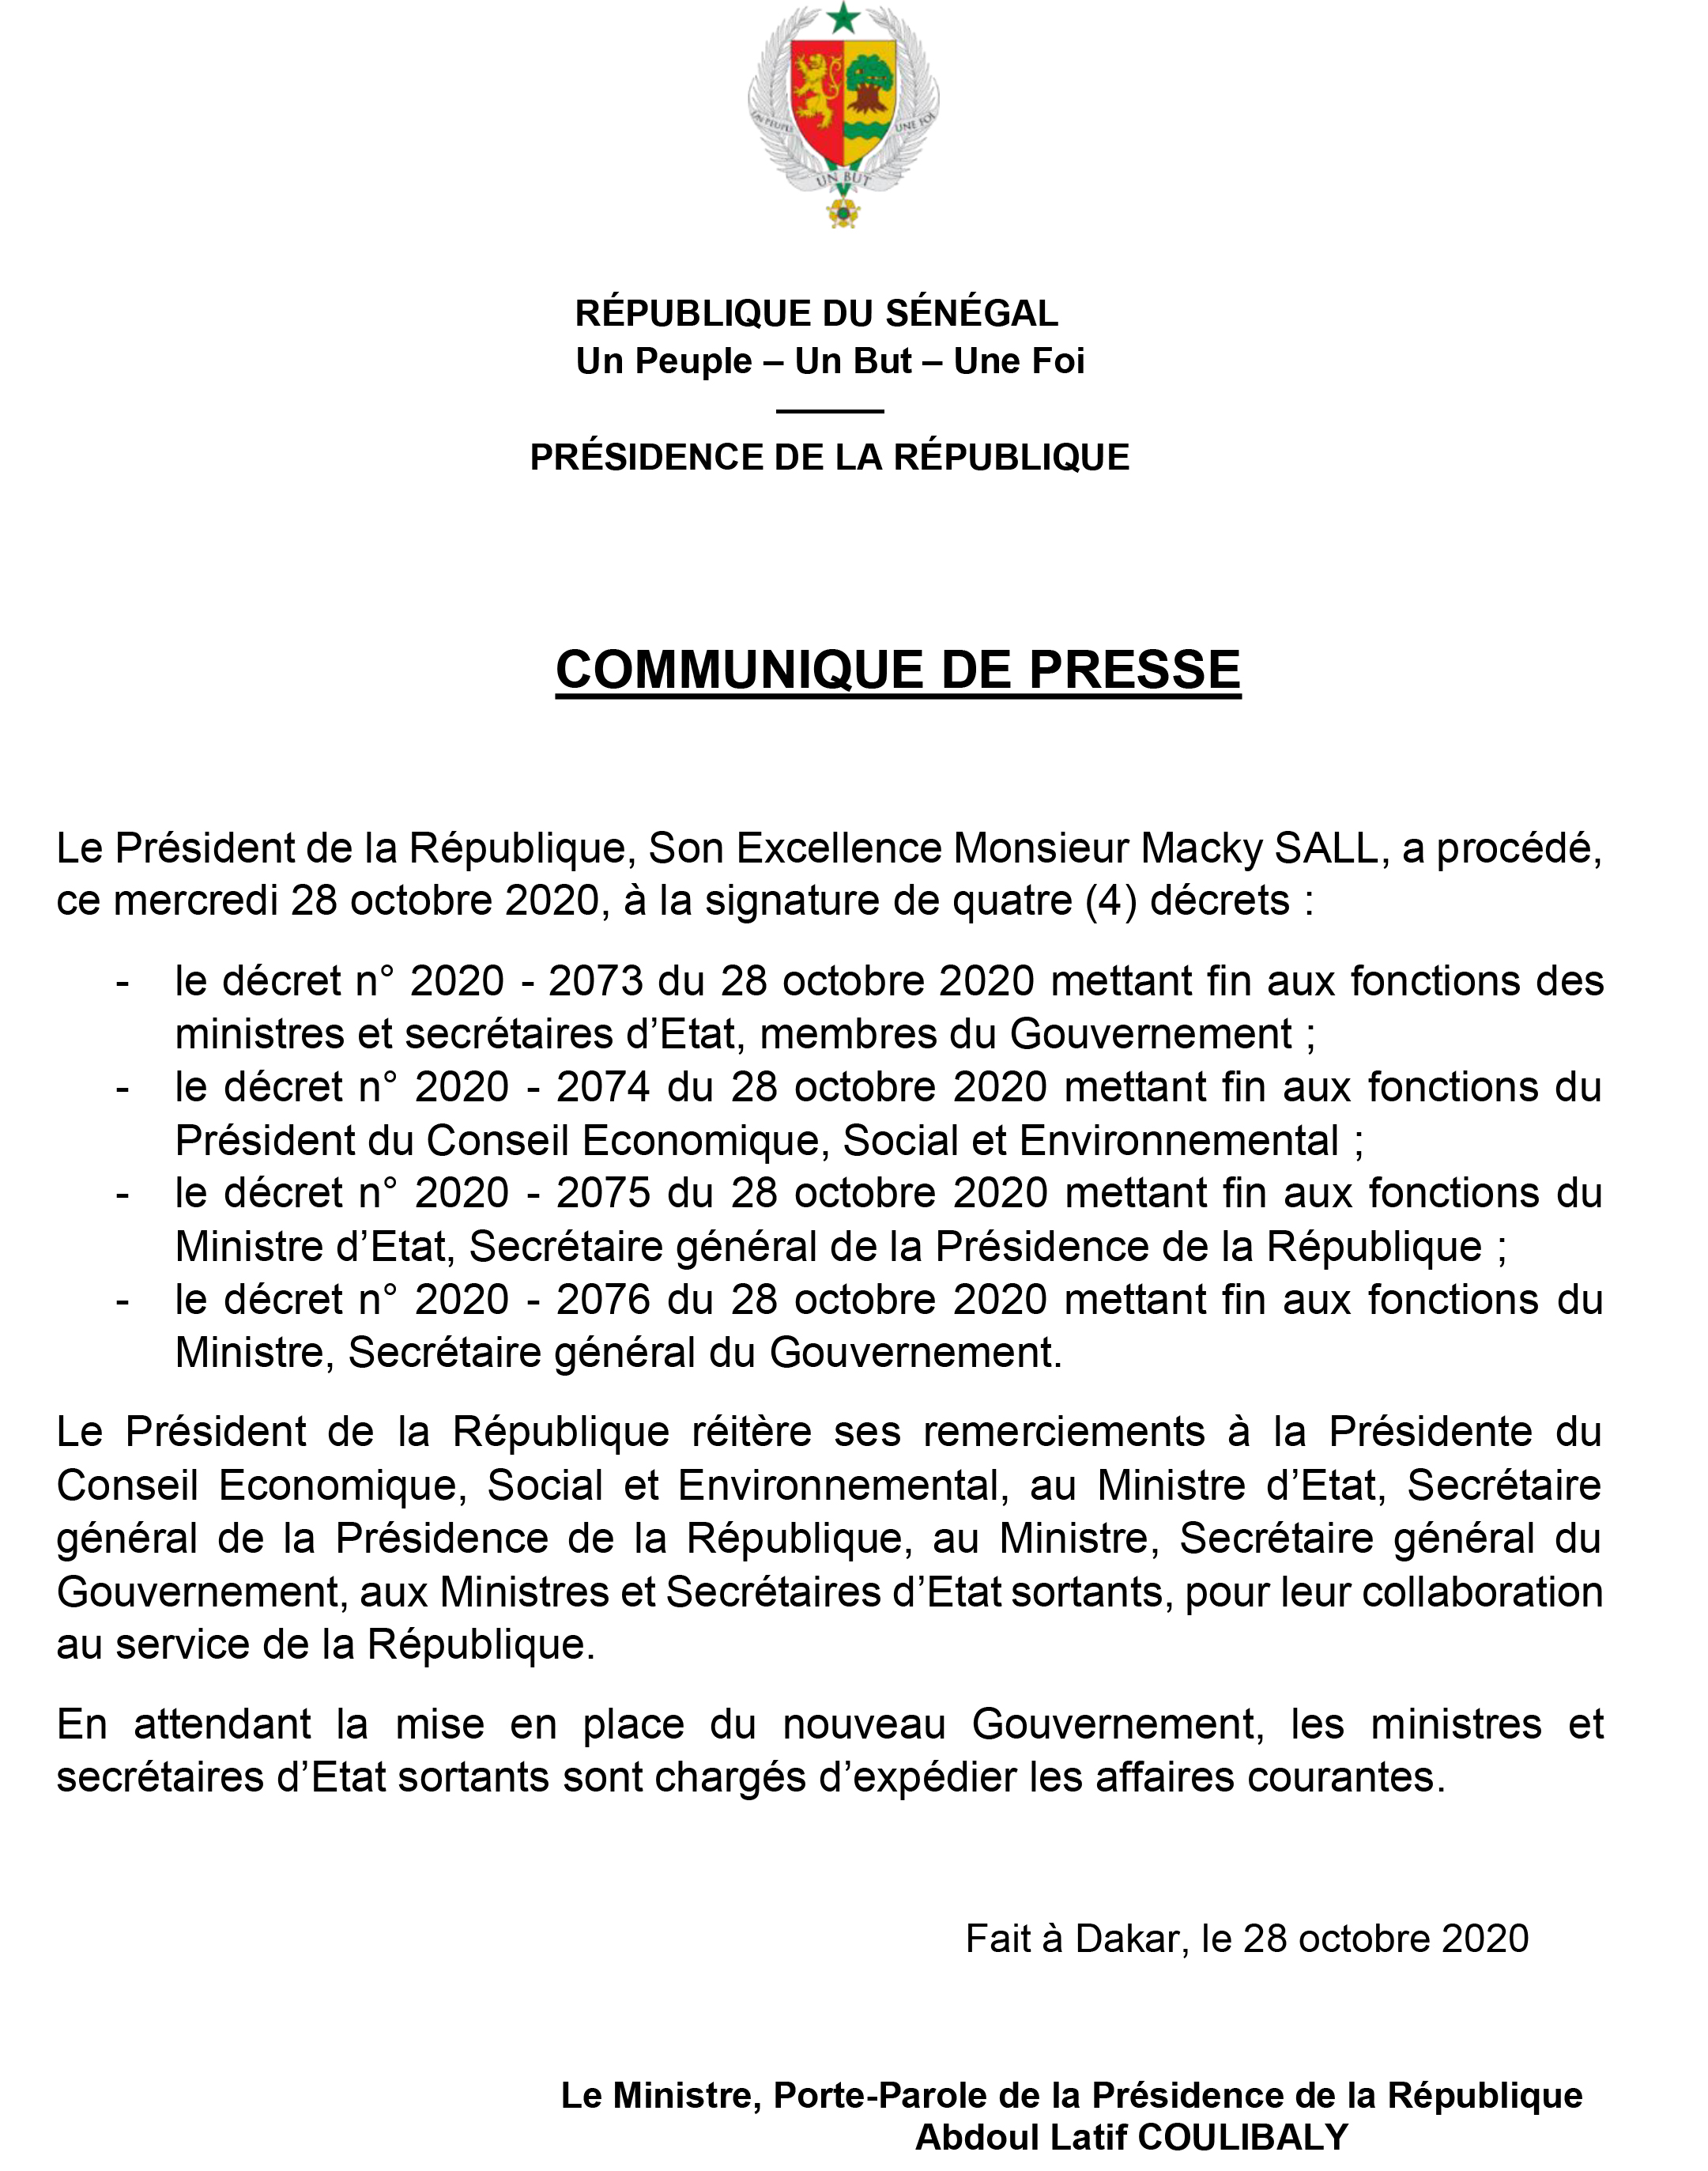 DIRECT - Macky Sall se sépare de ses ministres, secrétaires généraux et de la Présidente du CESE